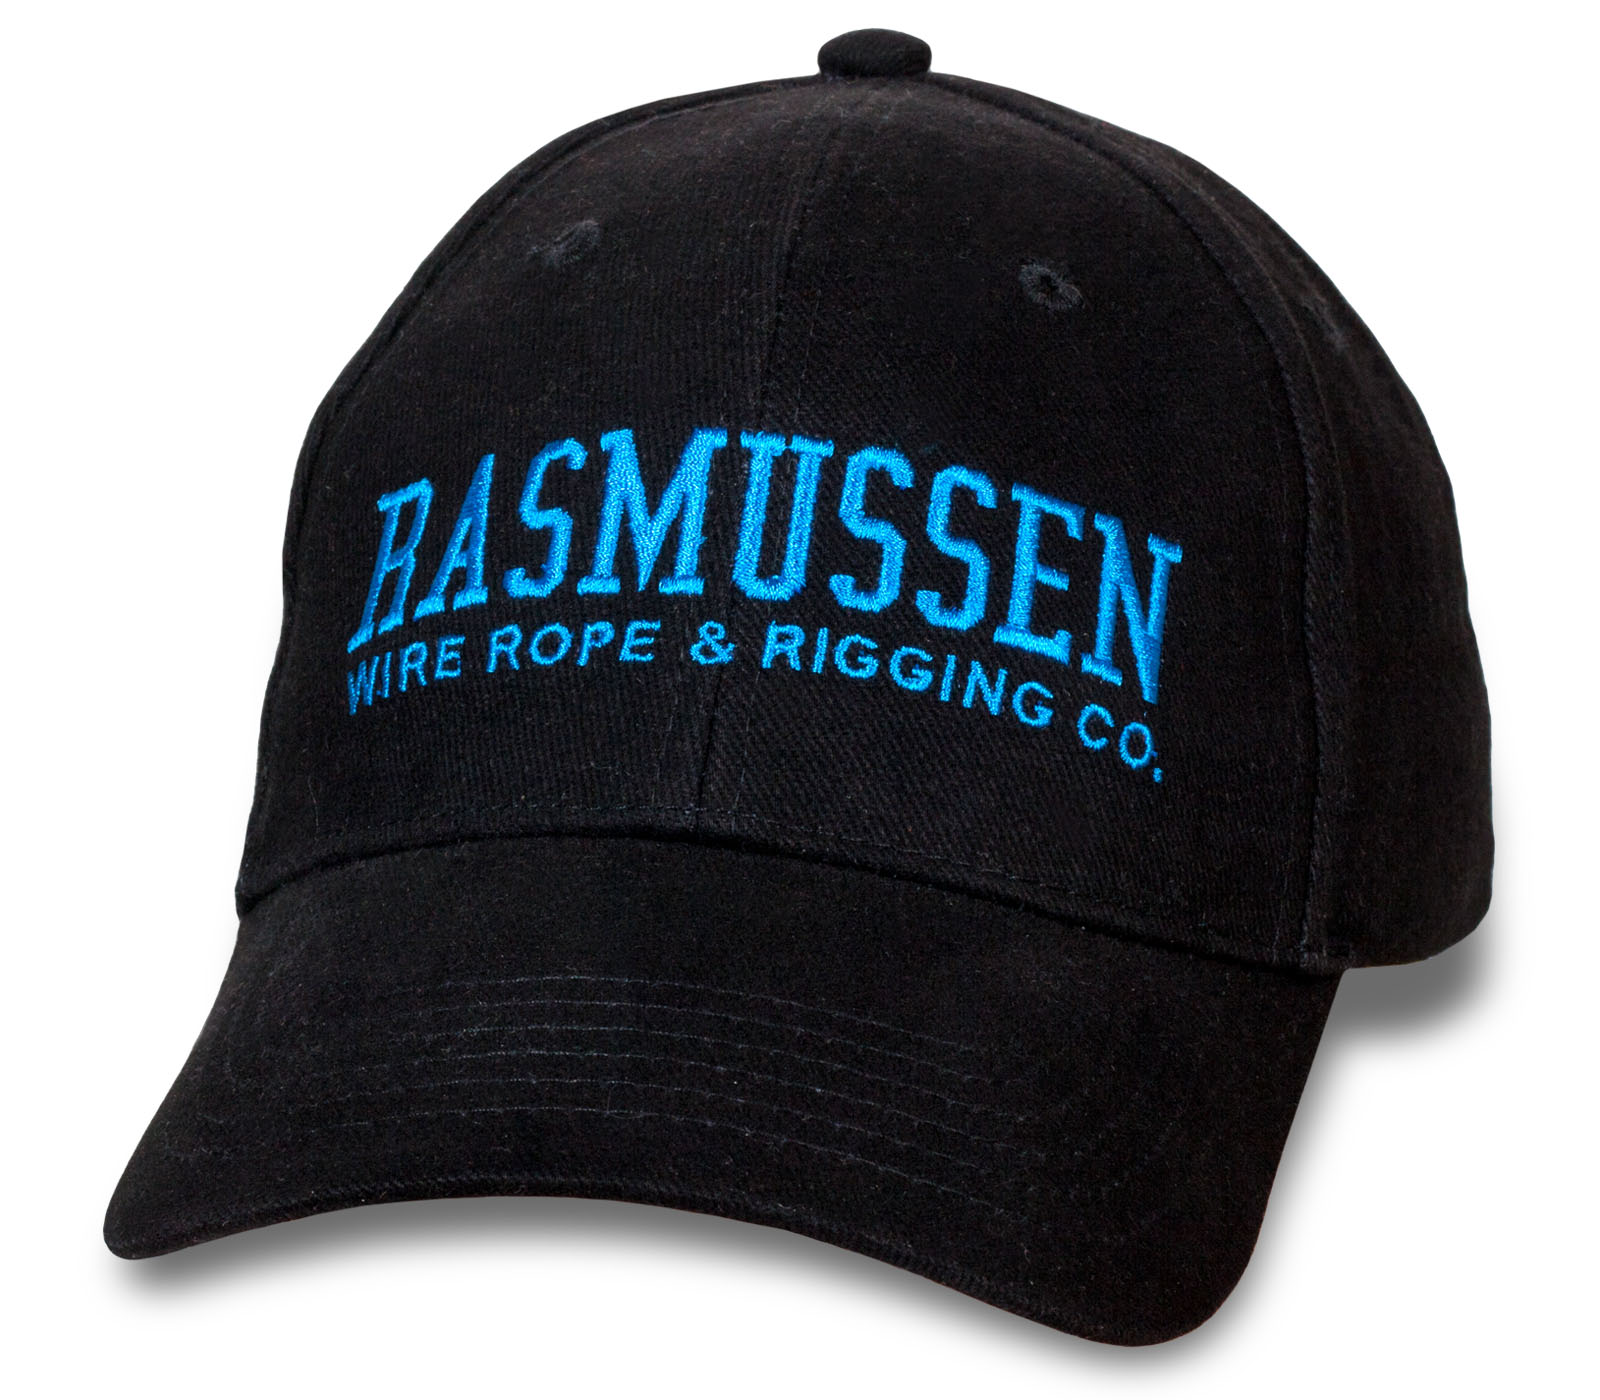 Заказать бейсболки Rasmussen по низким ценам онлайн